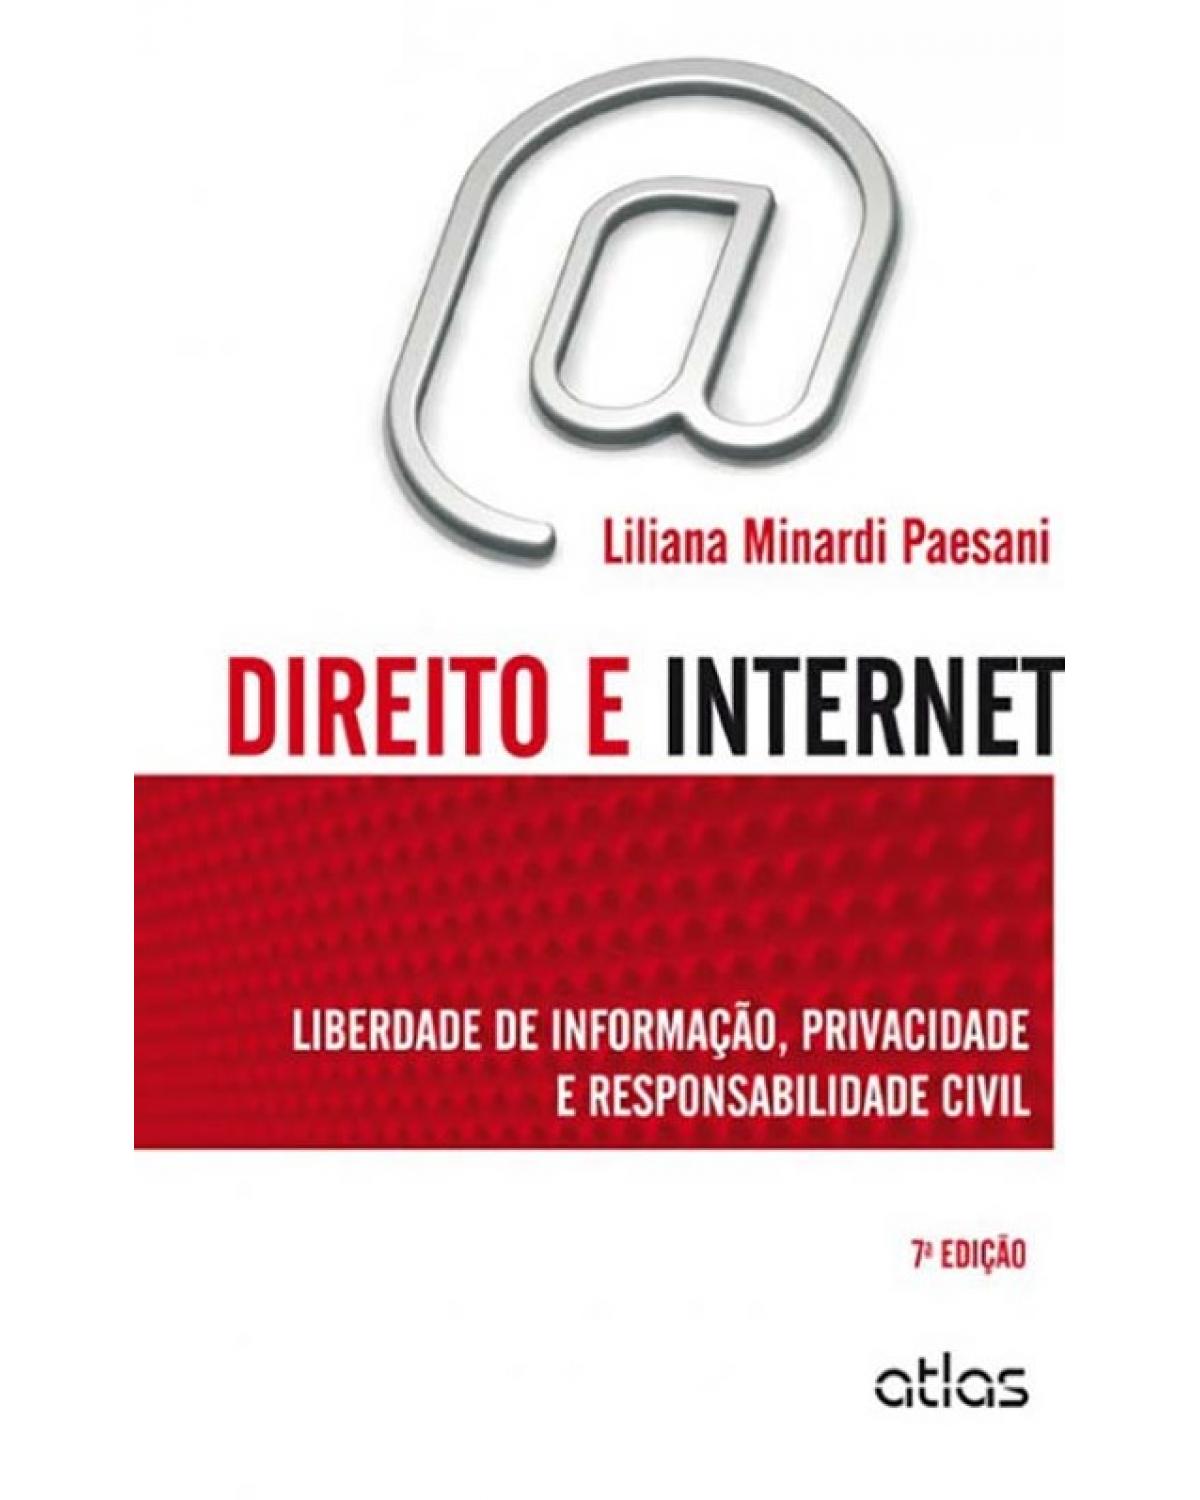 Direito e internet - Liberdade de informação, privacidade e responsabilidade civil - 7ª Edição | 2014